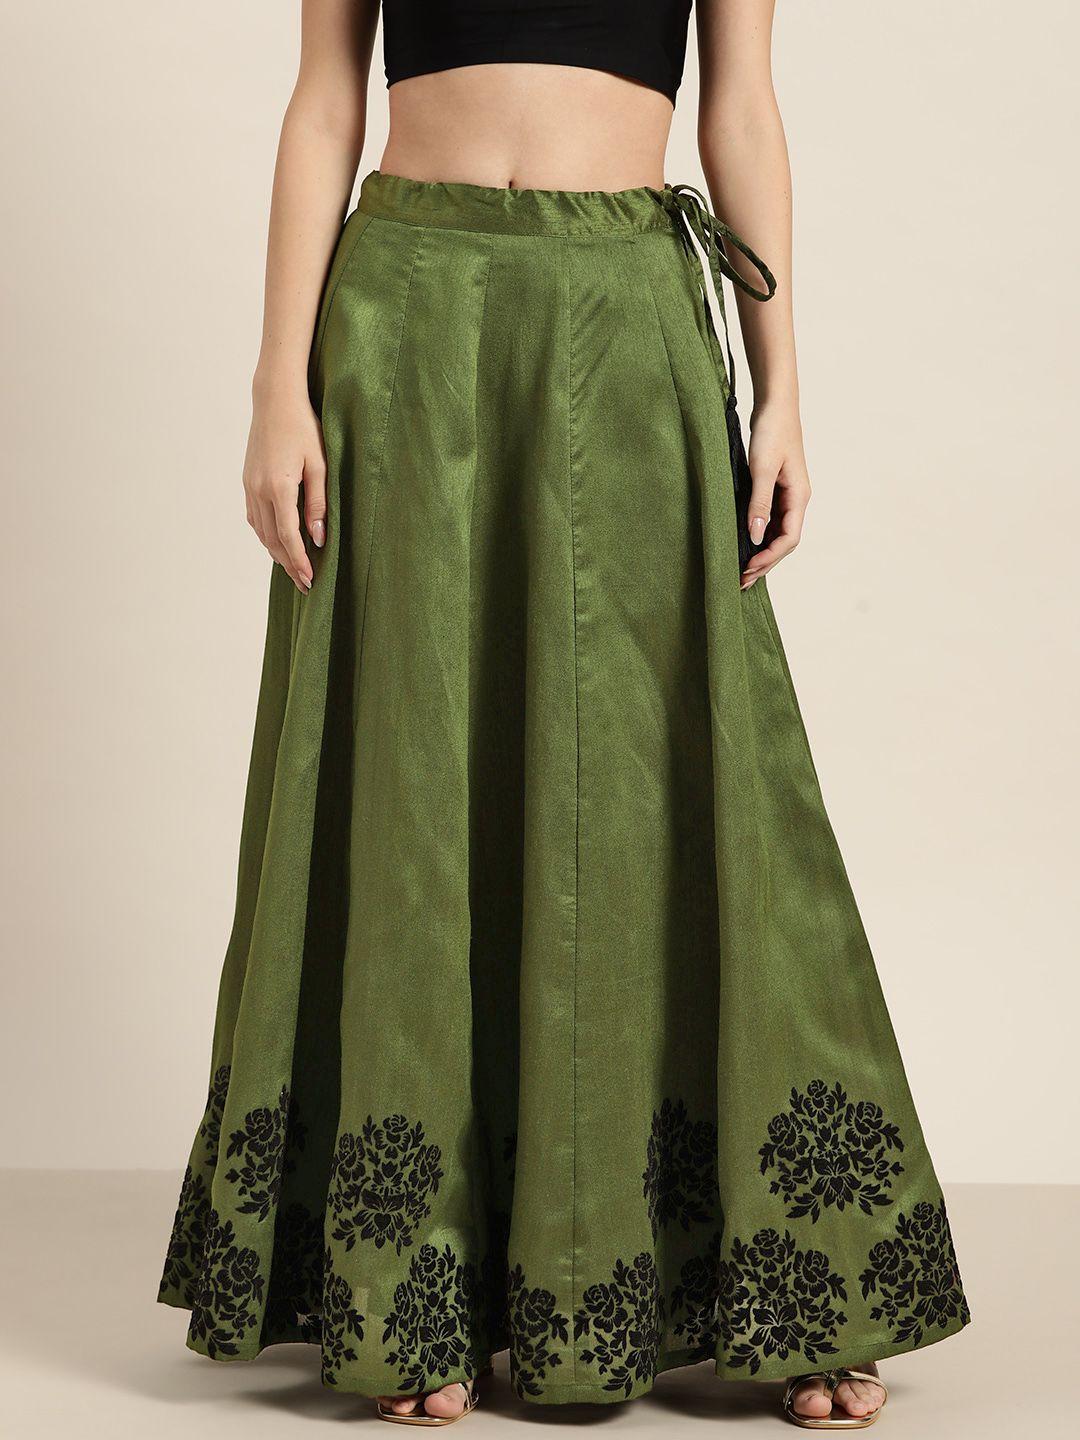 shae by sassafras green & black border printed anarkali skirt